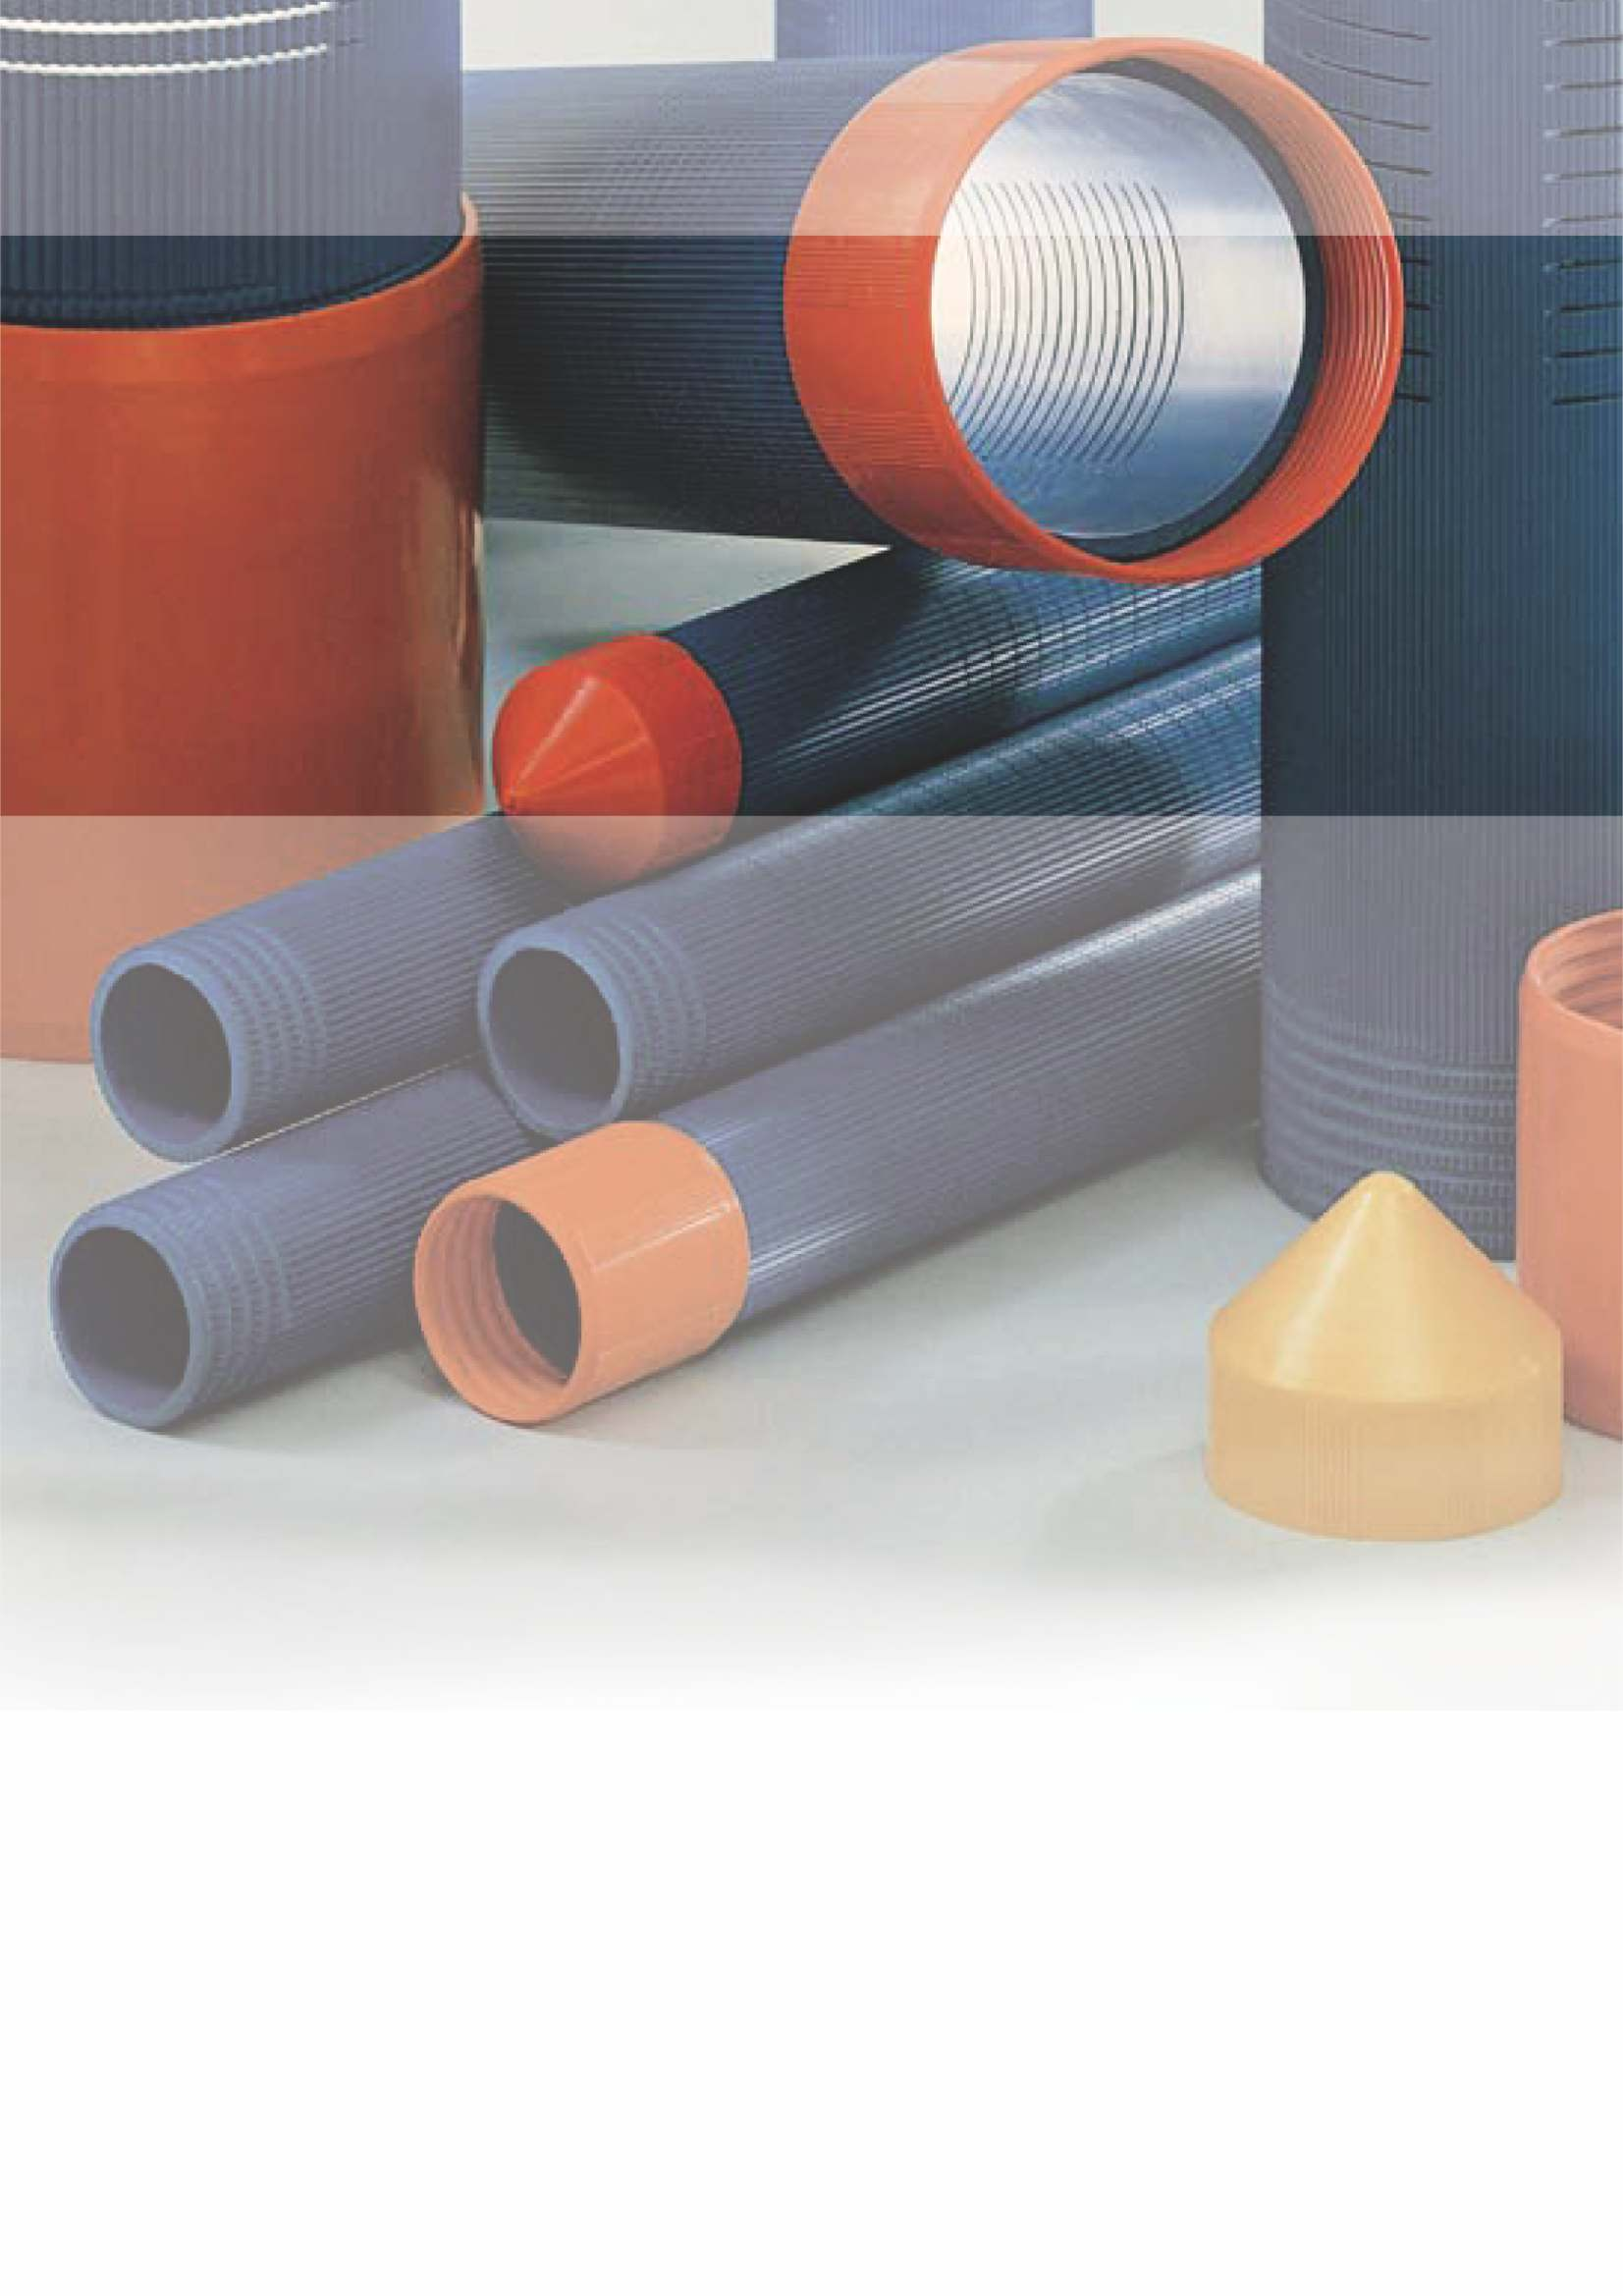 Σωλήνες αποστράγγισης DURVINIL RFS DURVINIL RFS drainage pipes Slotted pipes can be used for draining excess water from the soil.